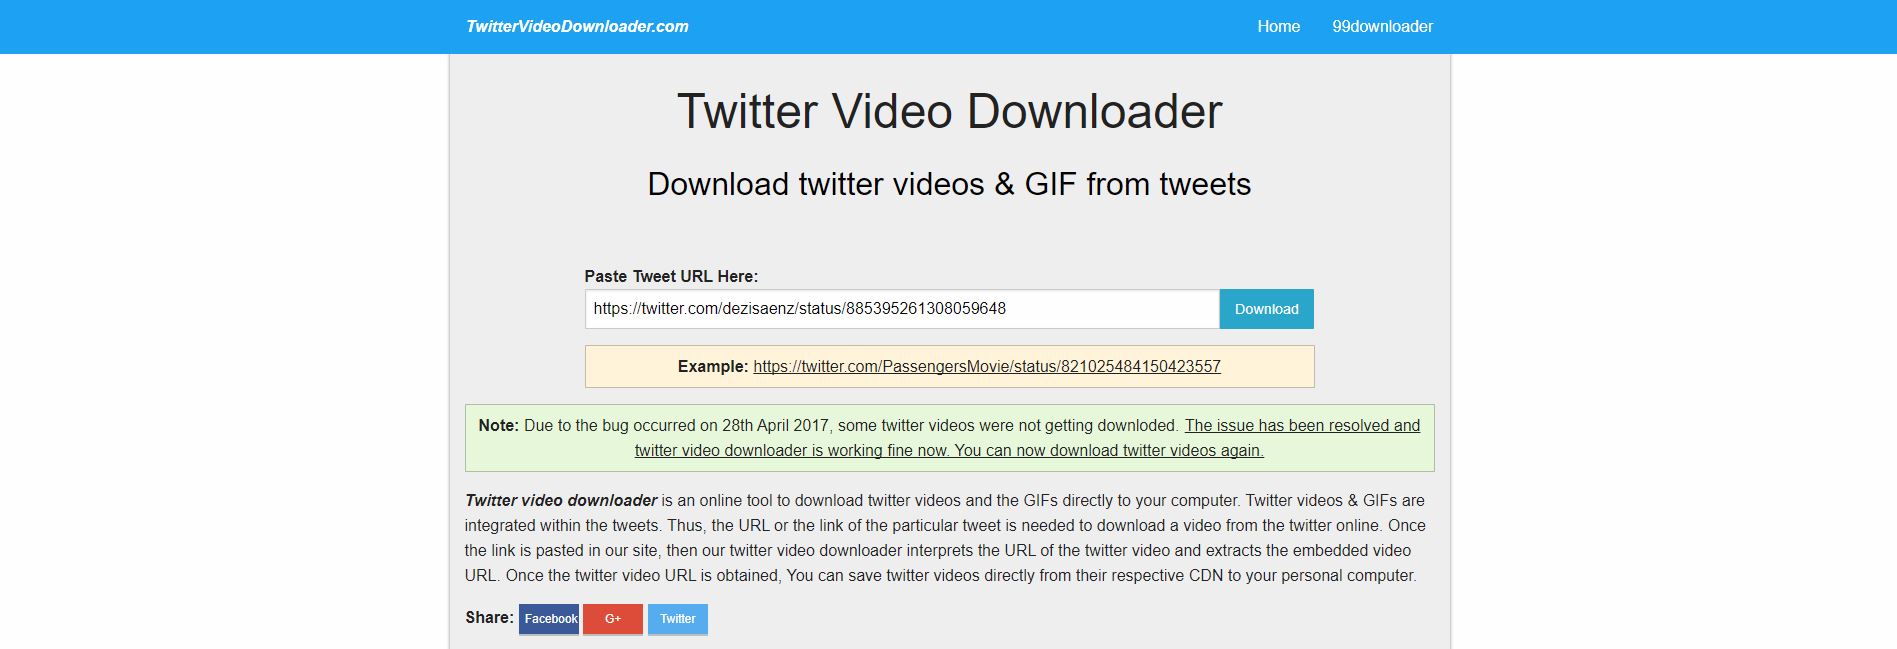 TwitterVideoDownloader Download Twitter Videos